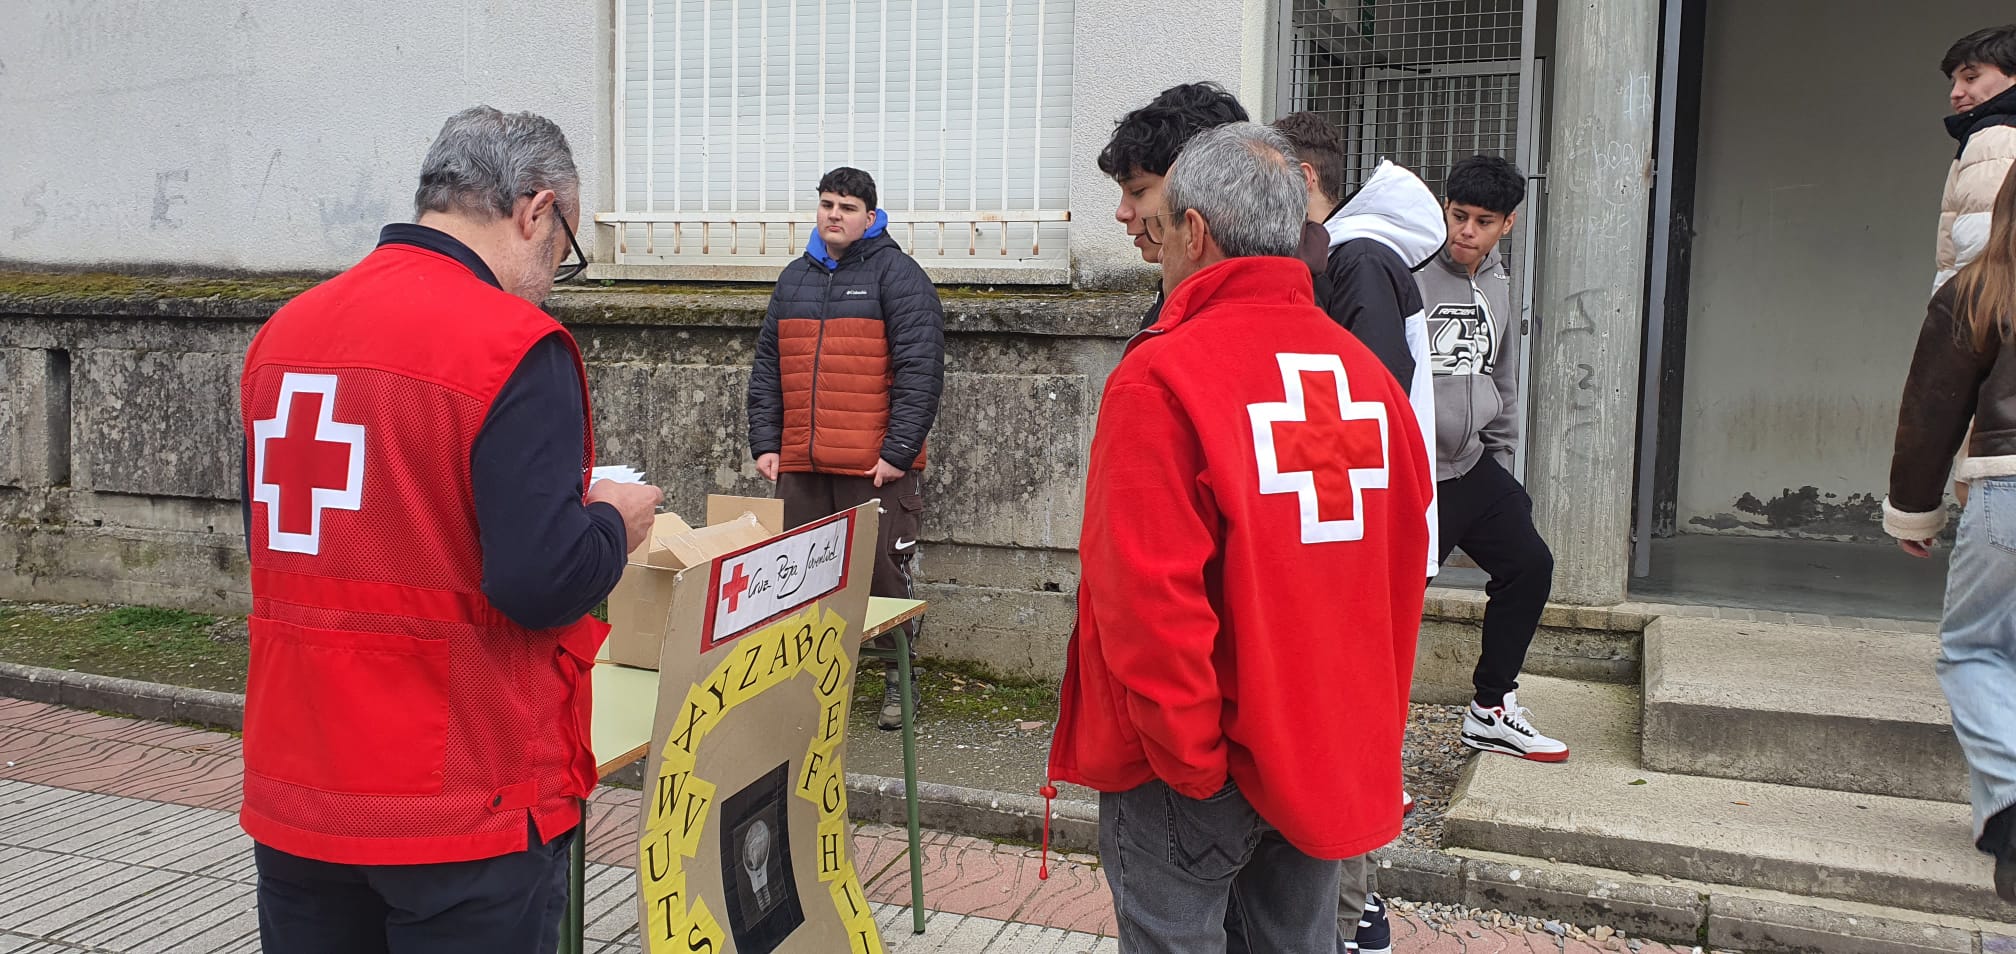 Una de las actividades de Cruz Roja en la provincia de León. | L.N.C.